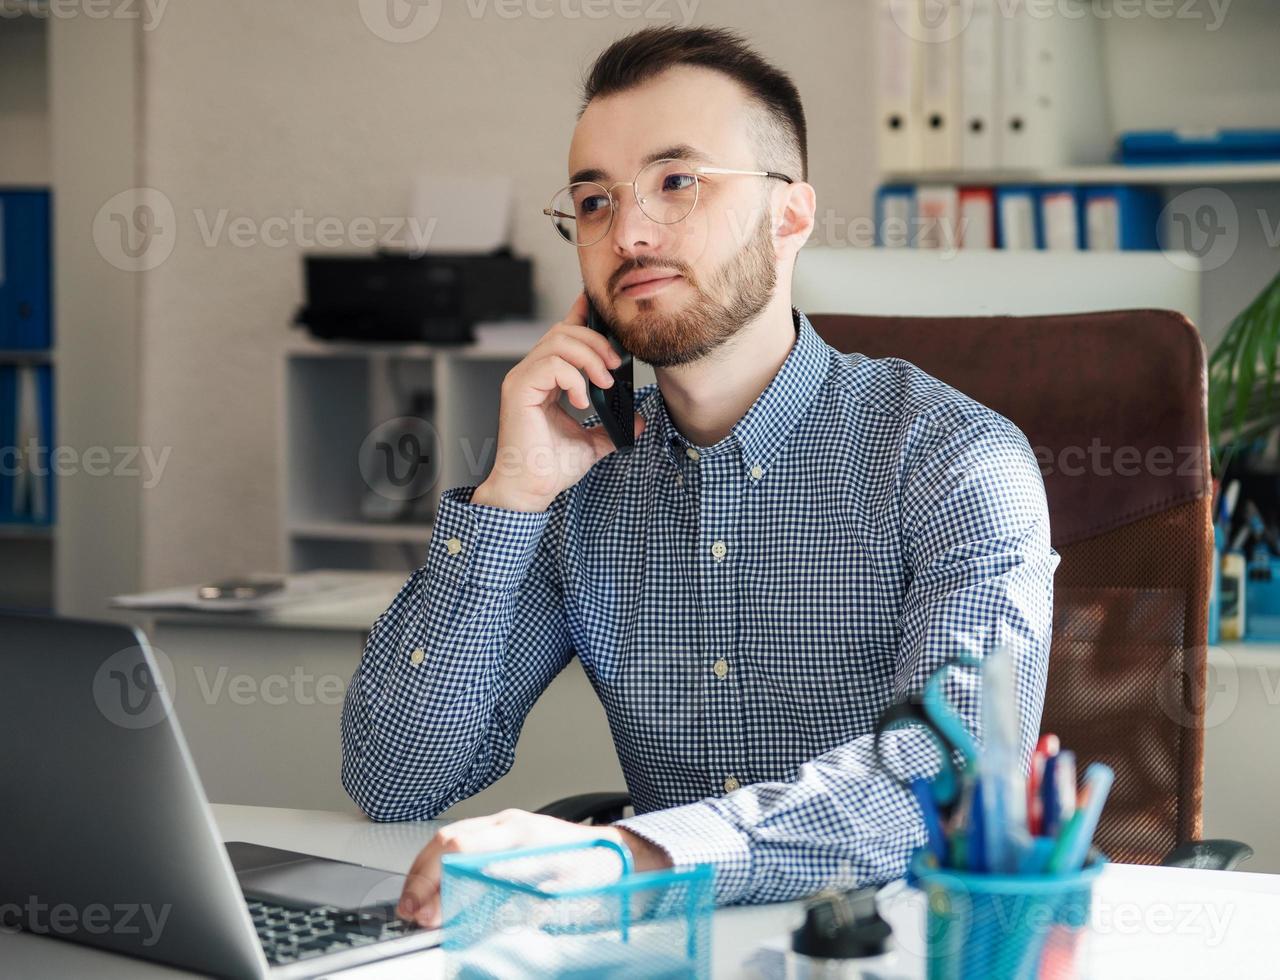 hombre de negocios trabajando en su computadora portátil en una oficina foto